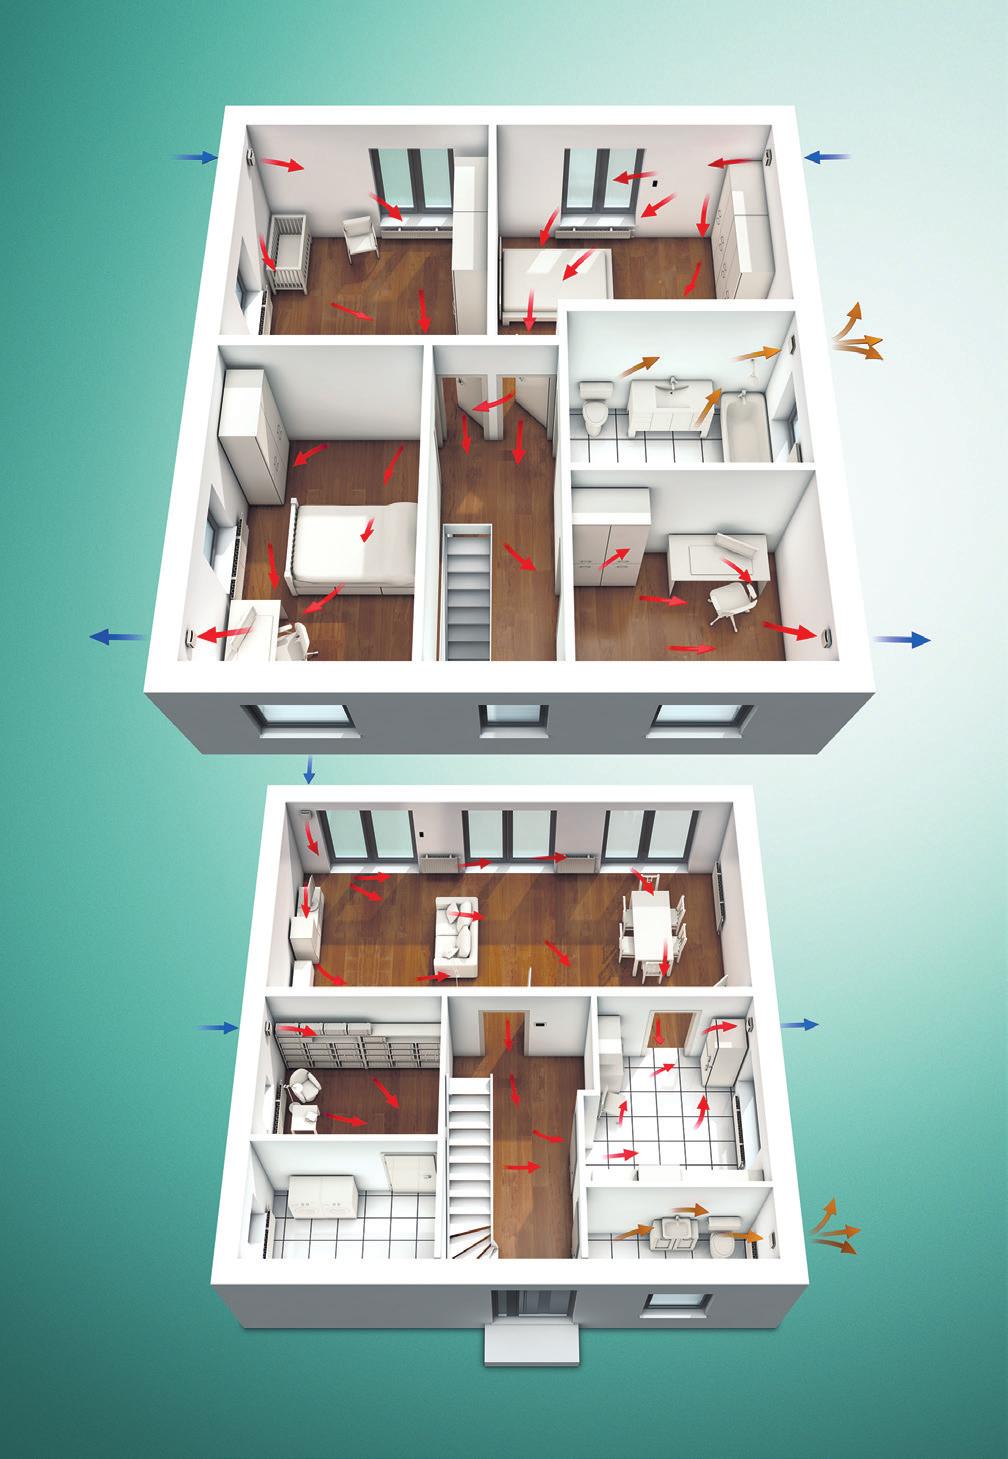 Příklad výpočtu pro jednogenerační rodinný dům Jednogenerační rodinný dům Velikost domu: 150 m 2, 4 osoby, přízemí: 1 WC pro hosty (5 m 2 ), 1 místnost na domácí práce (9 m 2 ), 1 pracovna (11 m 2 ),